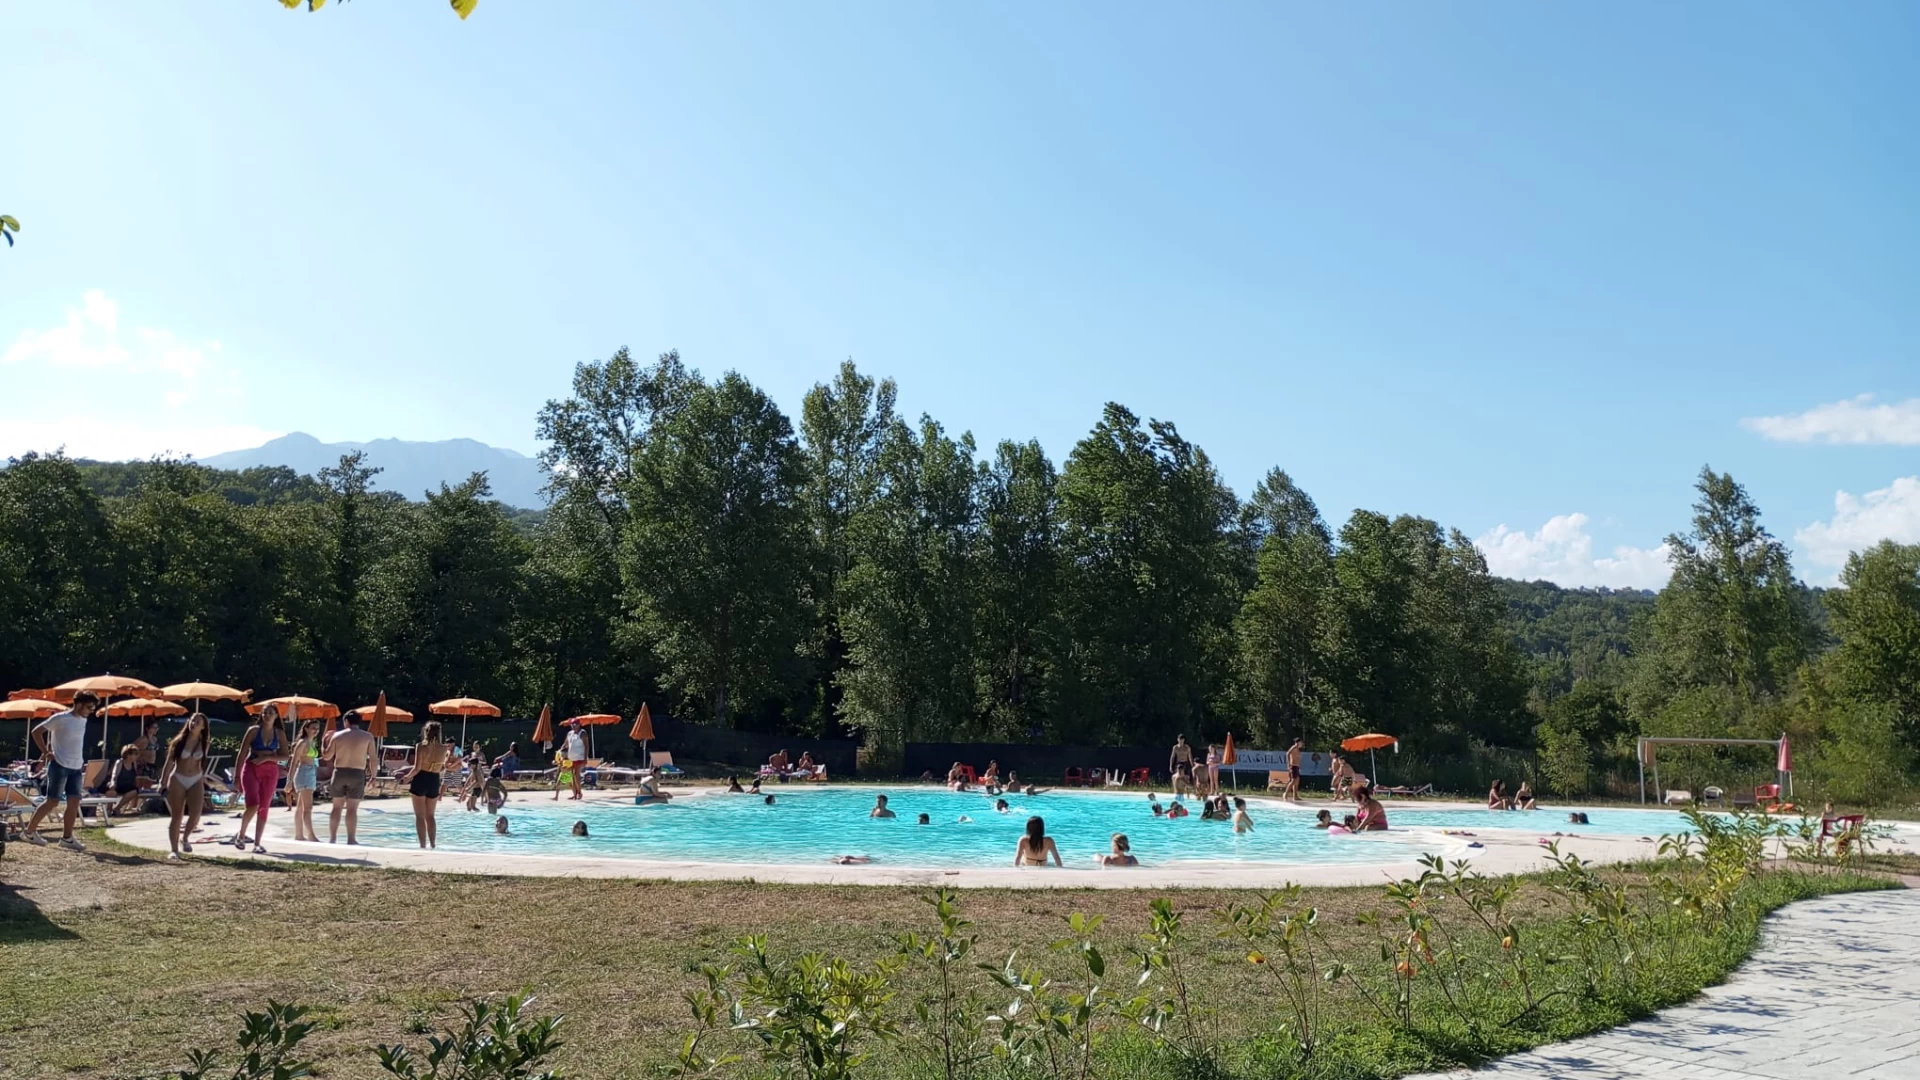 Colli a Volturno: sabato 29 giugno la riapertura della piscina comunale. Prevista una grande stagione estiva.